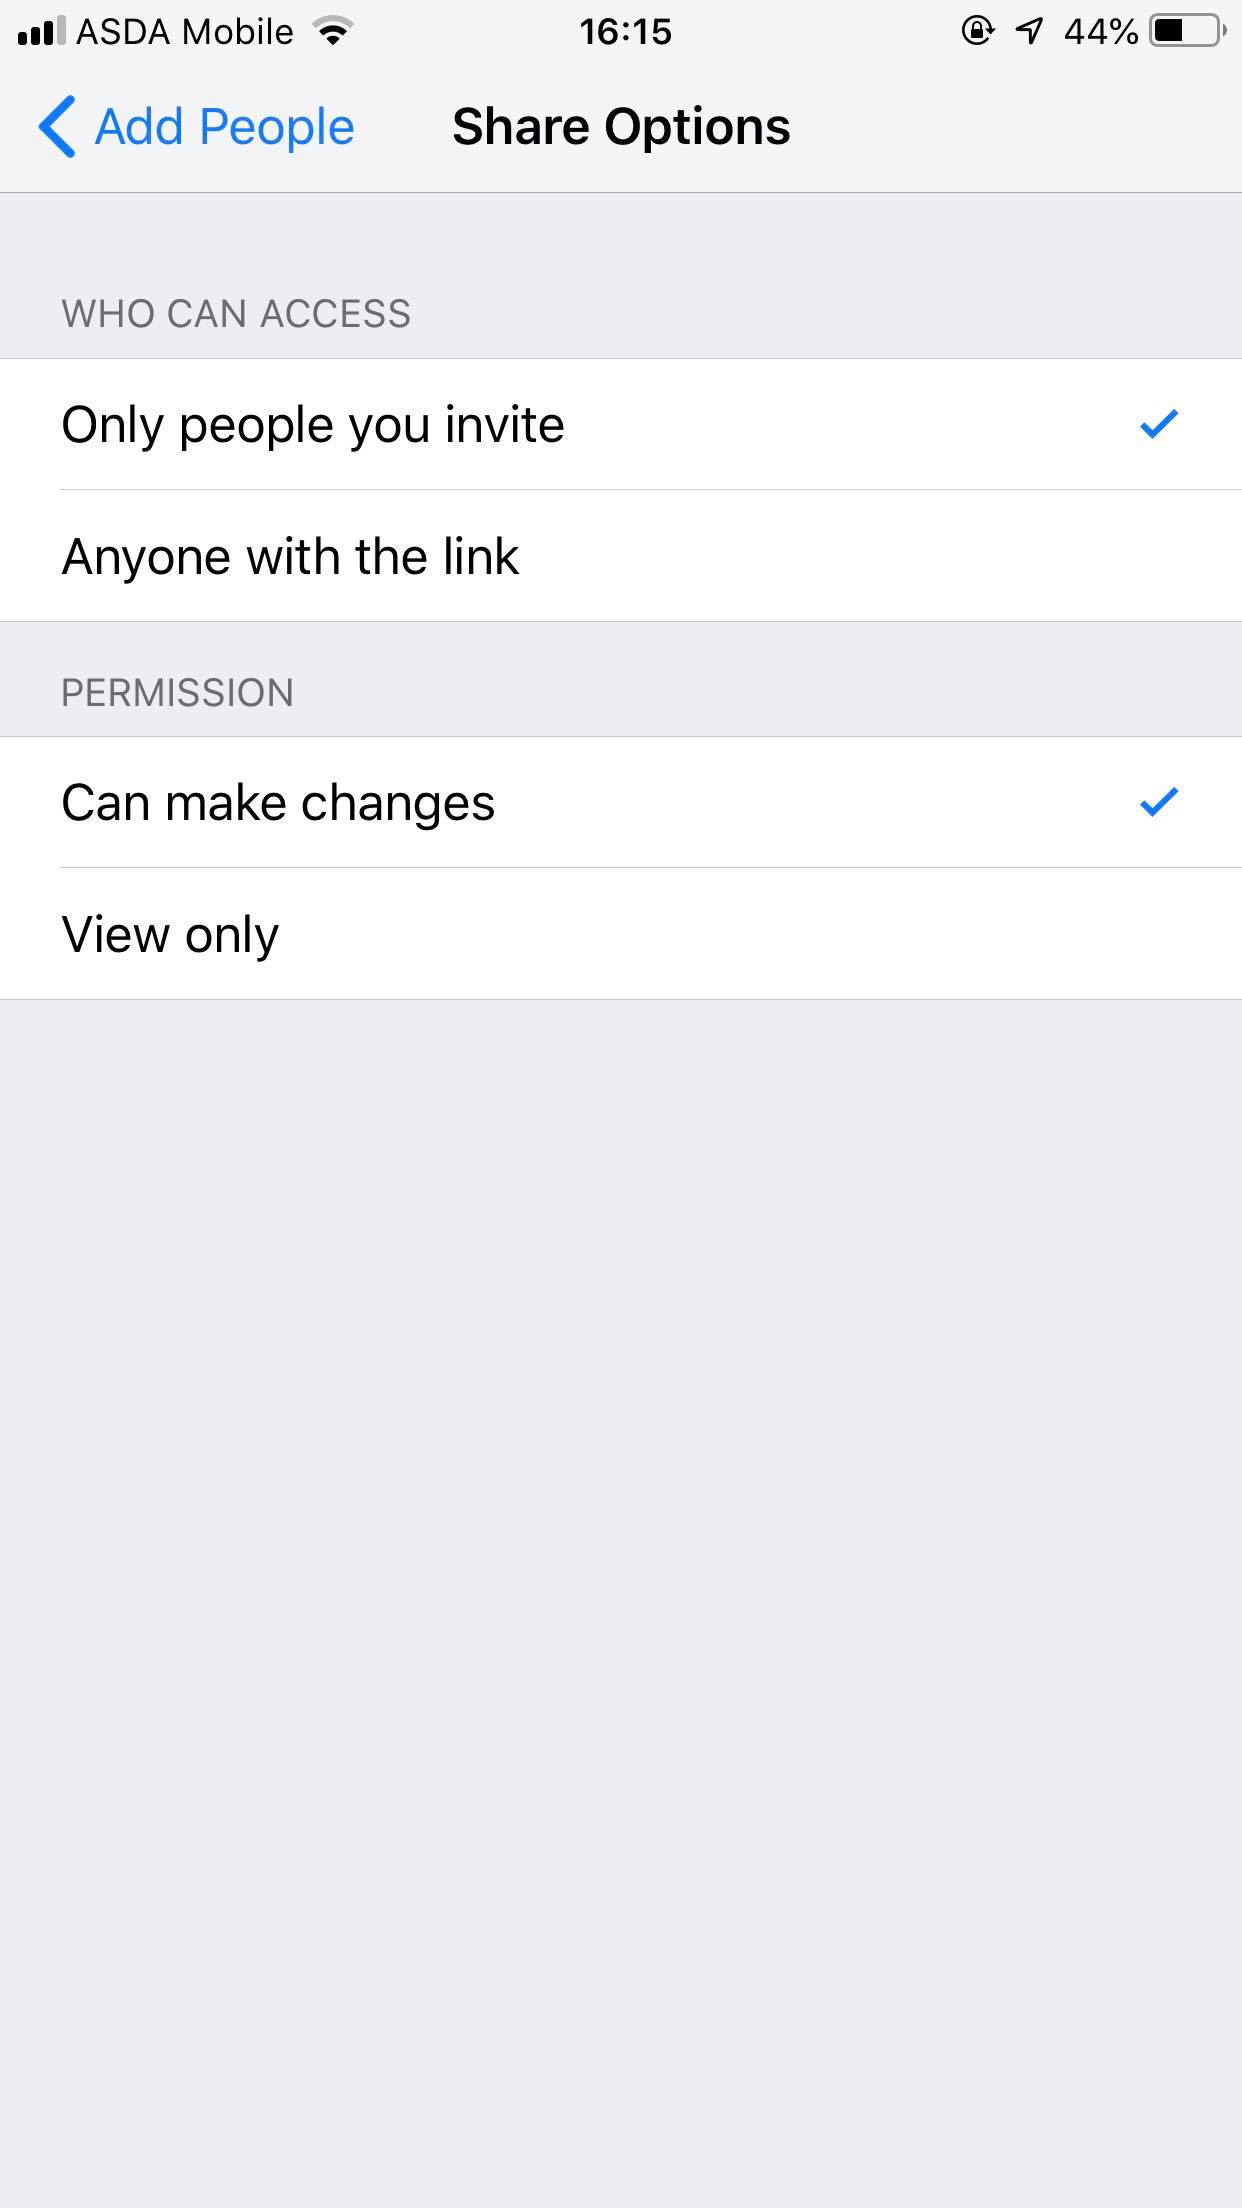 Cómo enviar por correo electrónico vídeos grandes desde el iPhone 6